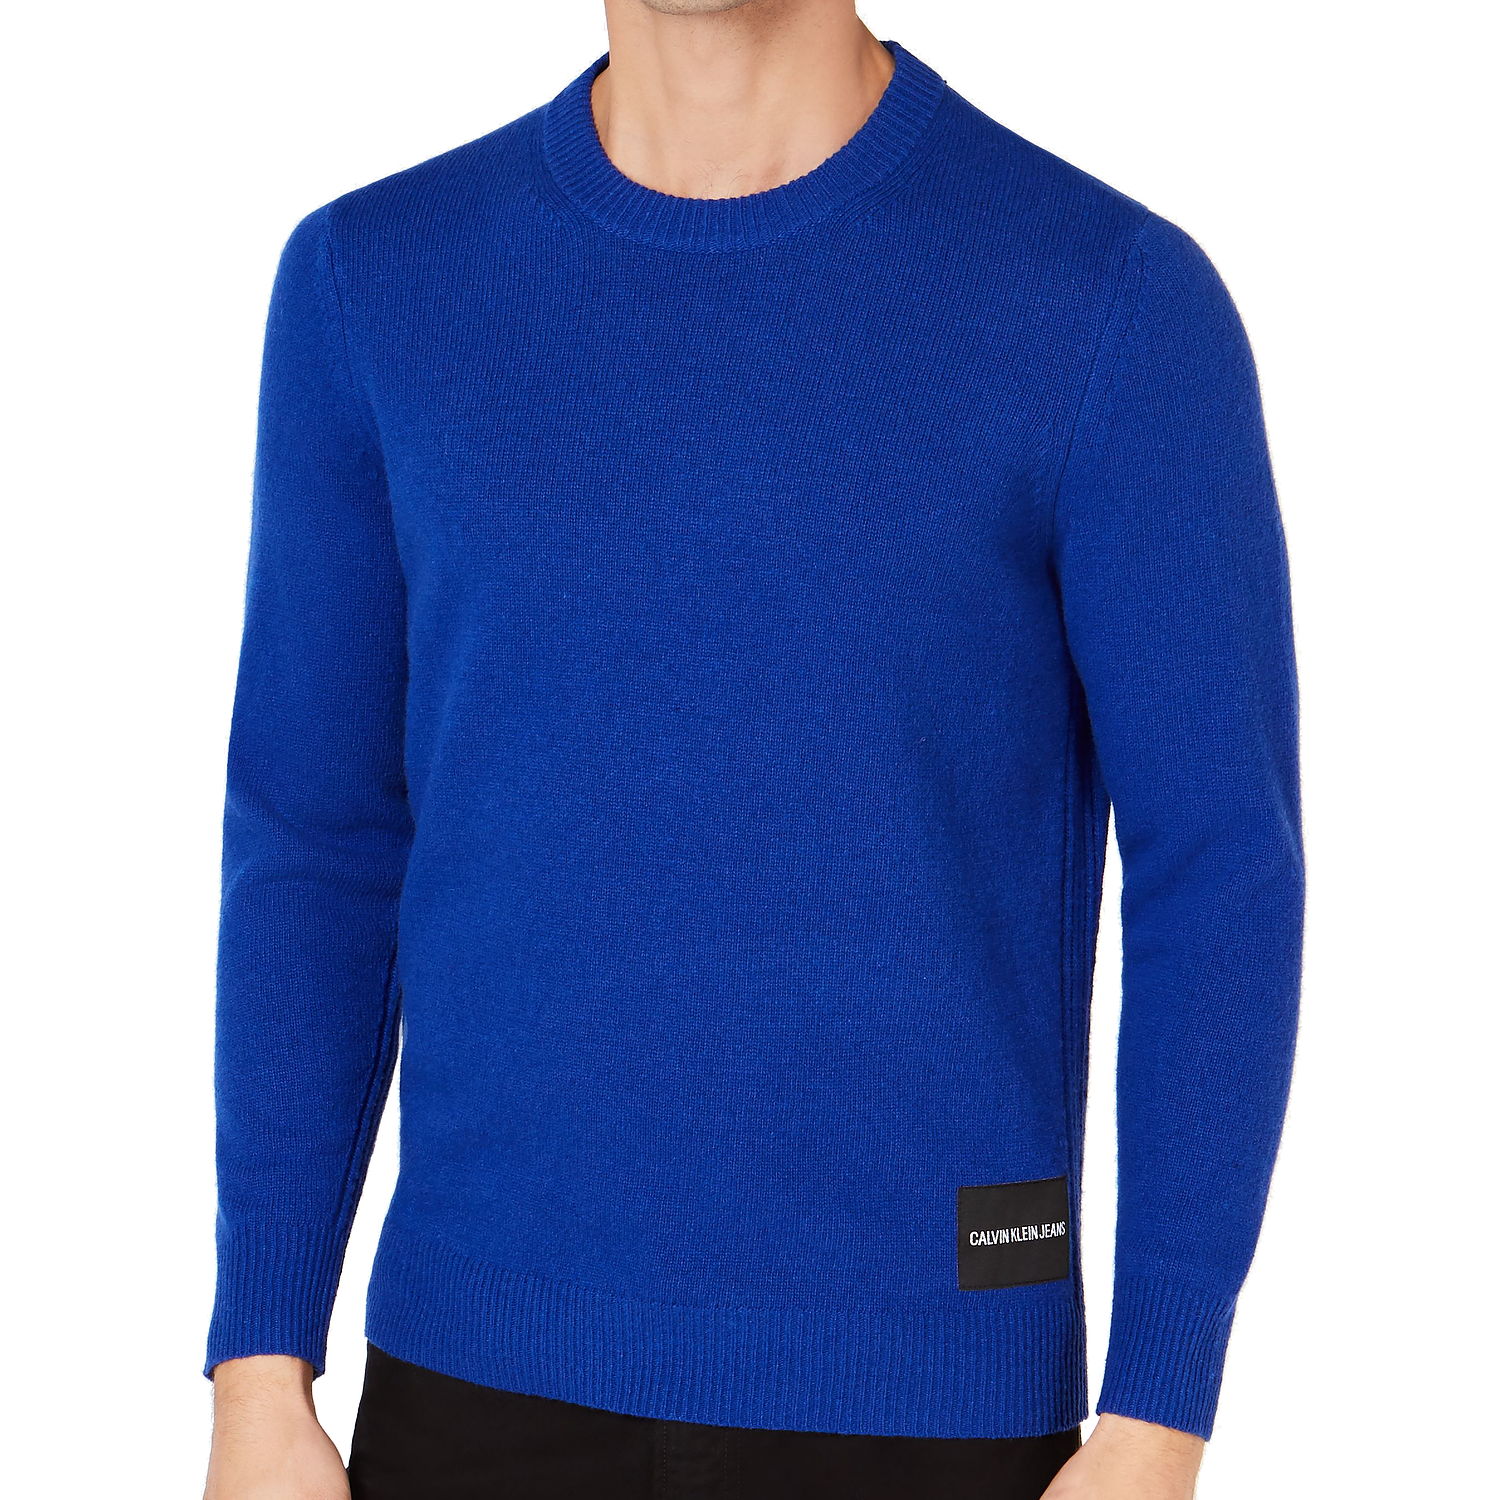 Calvin Klein Mens Mazarine Blue Merino Wool Crew Neck Sweater $90